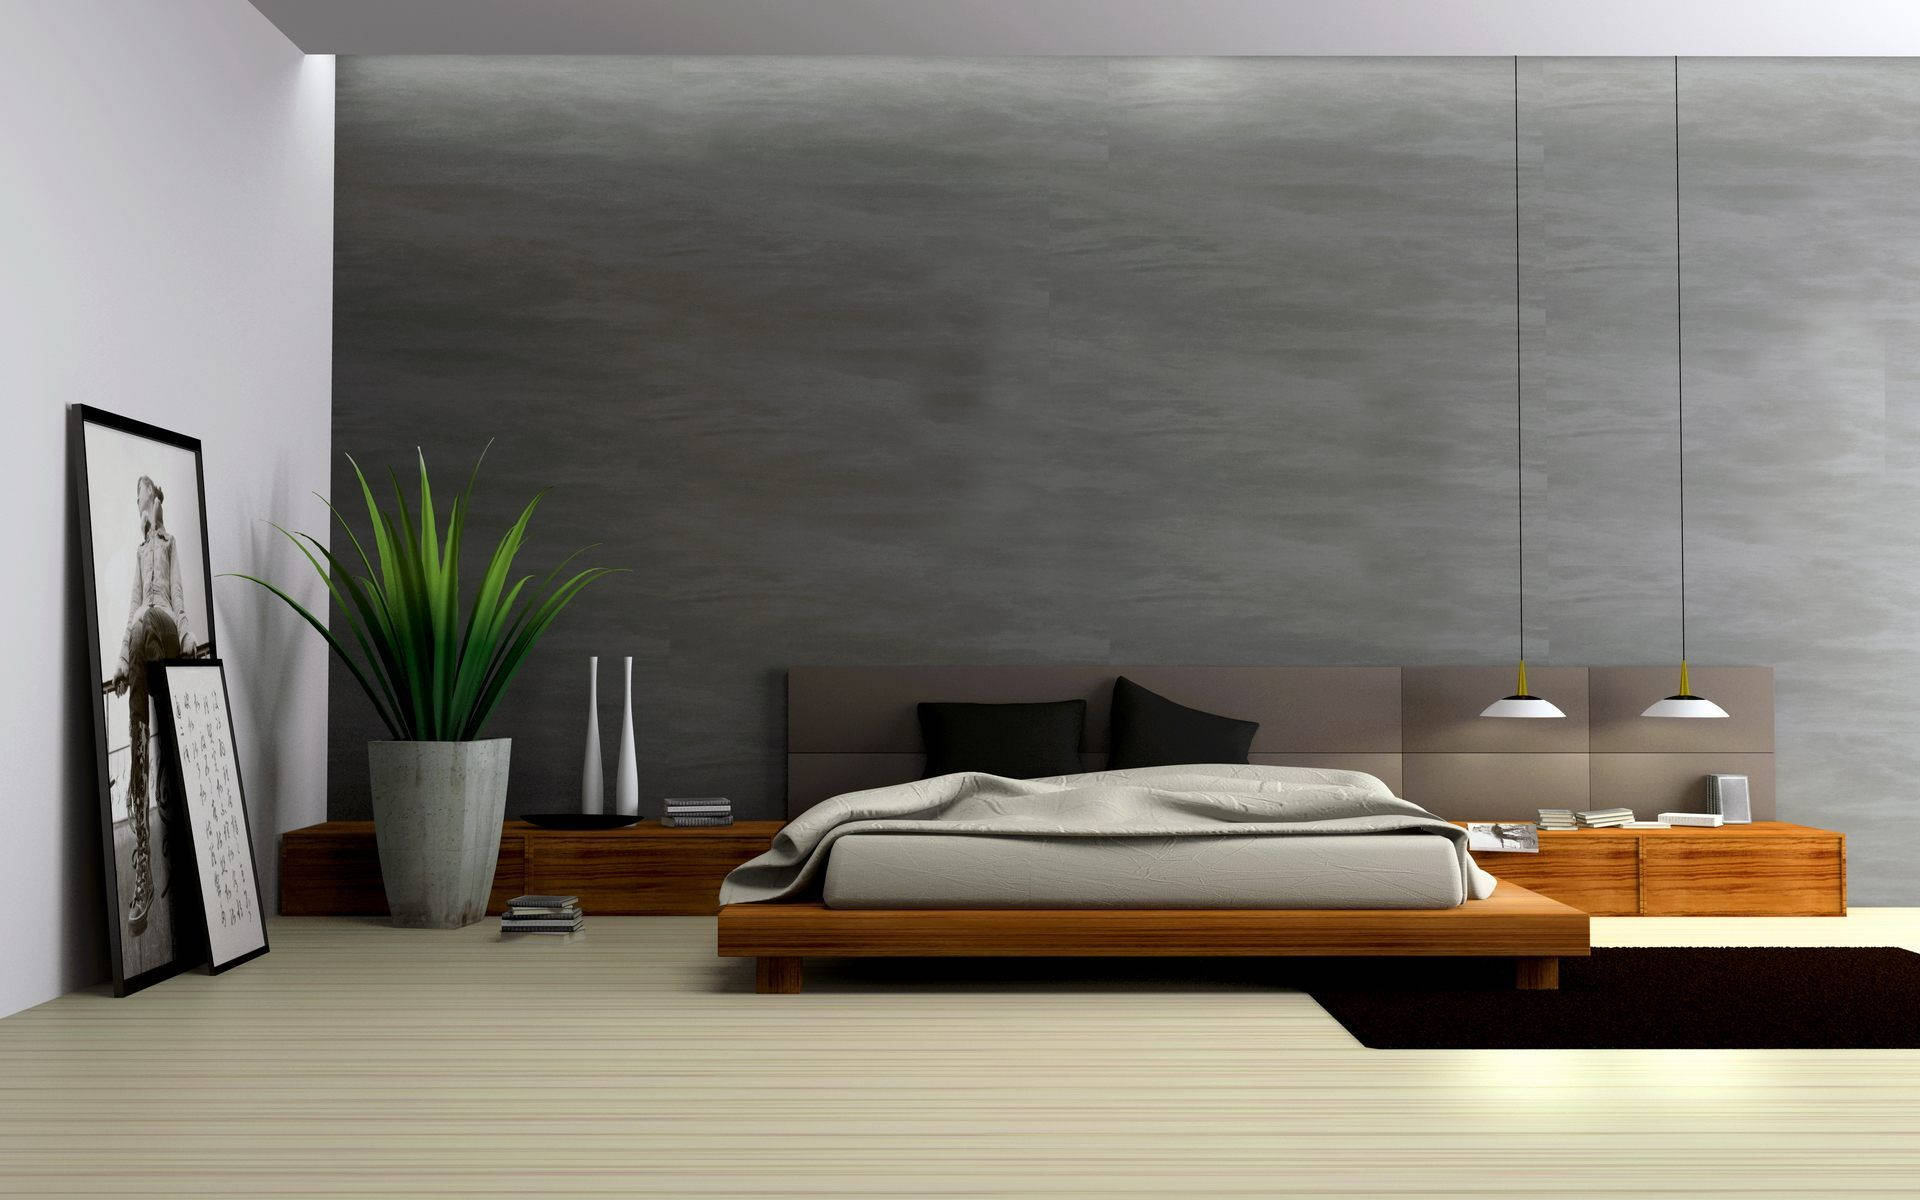 Perspective Plan Of A Bedroom Wallpaper